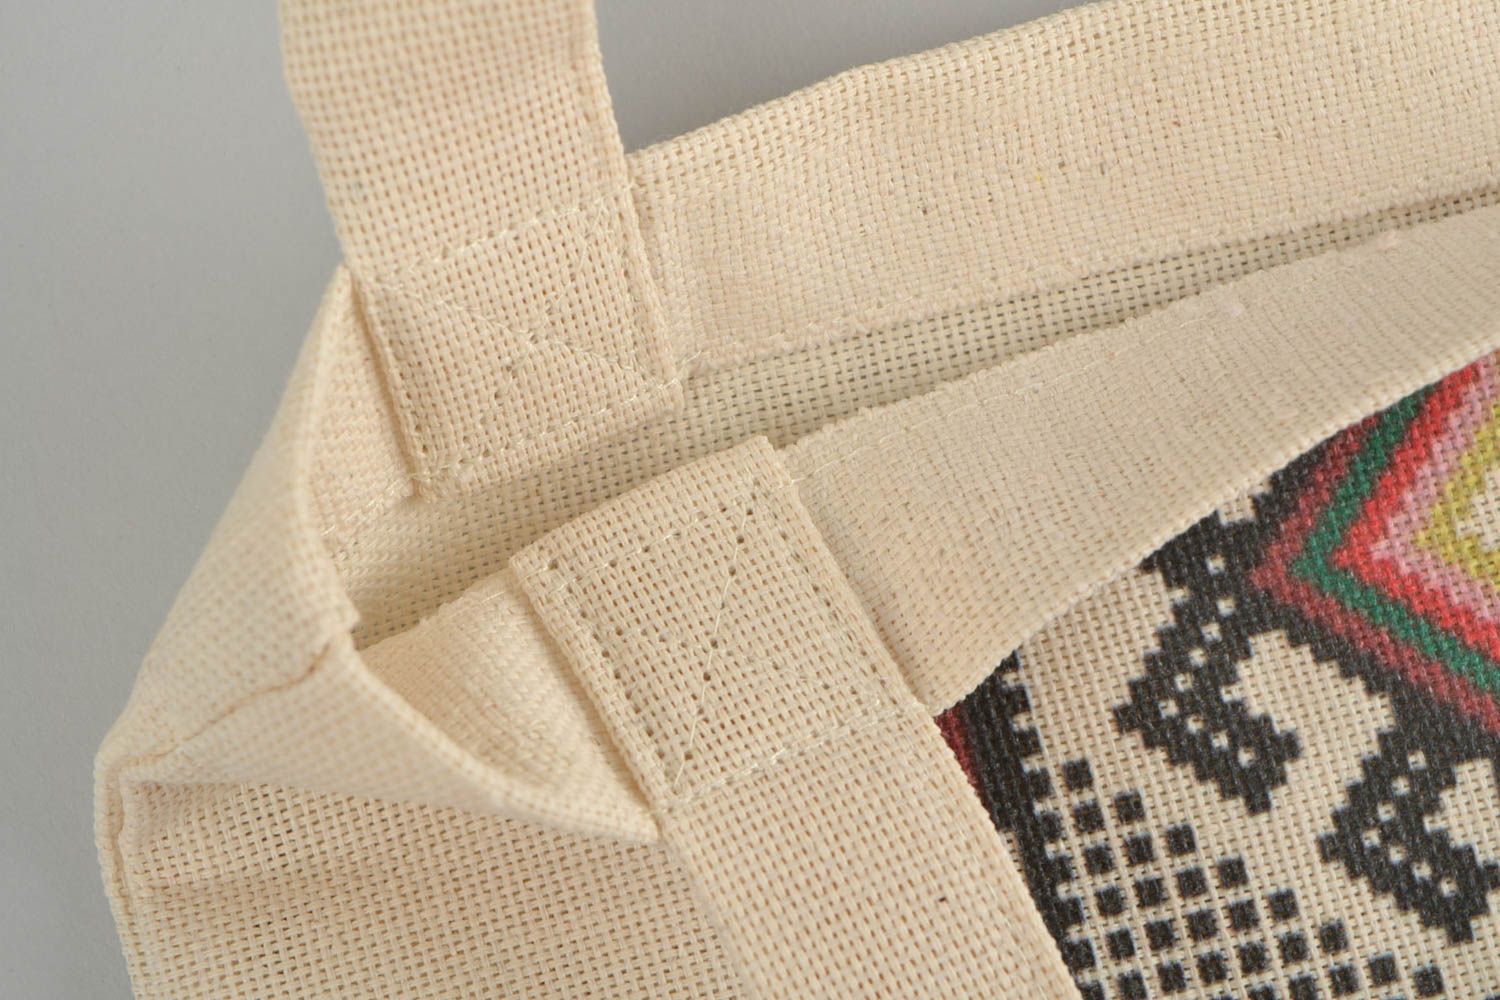 Женская сумка из ткани с принтом ручной работы авторская красивая в эко стиле фото 2